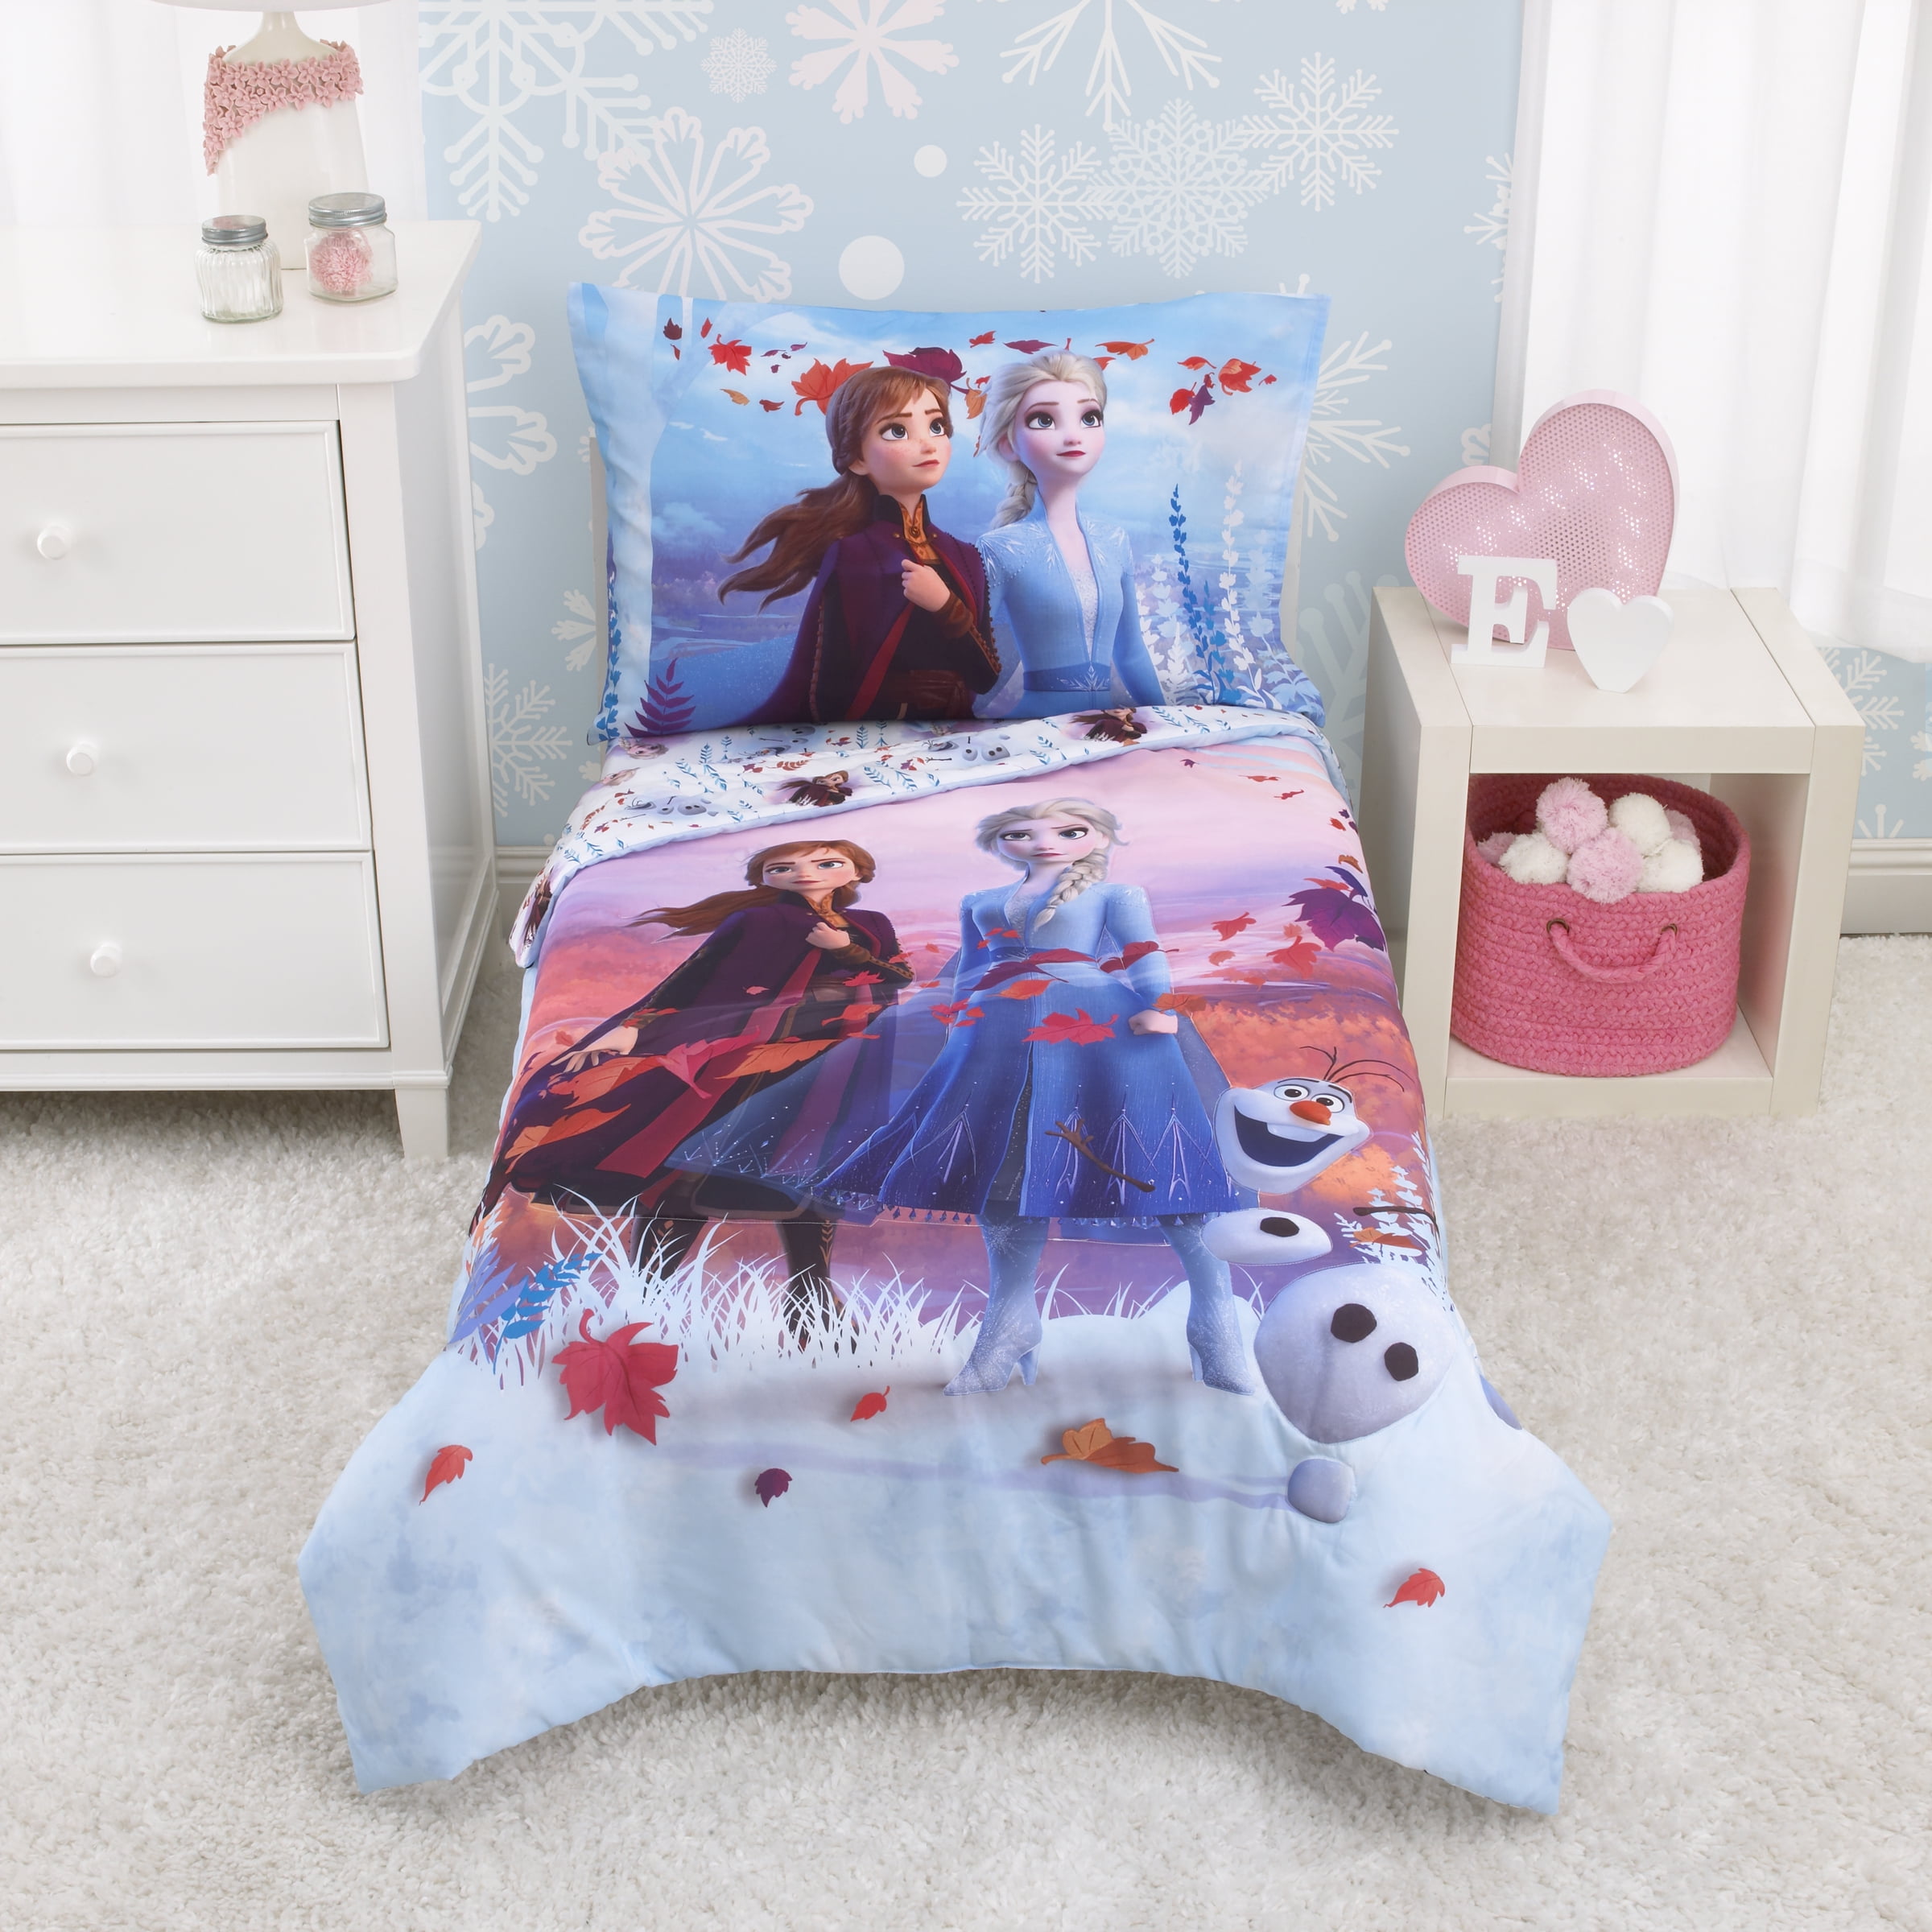 Disney Frozen Olaf Single Duvet Cover Set Reversible Bedding Kids 